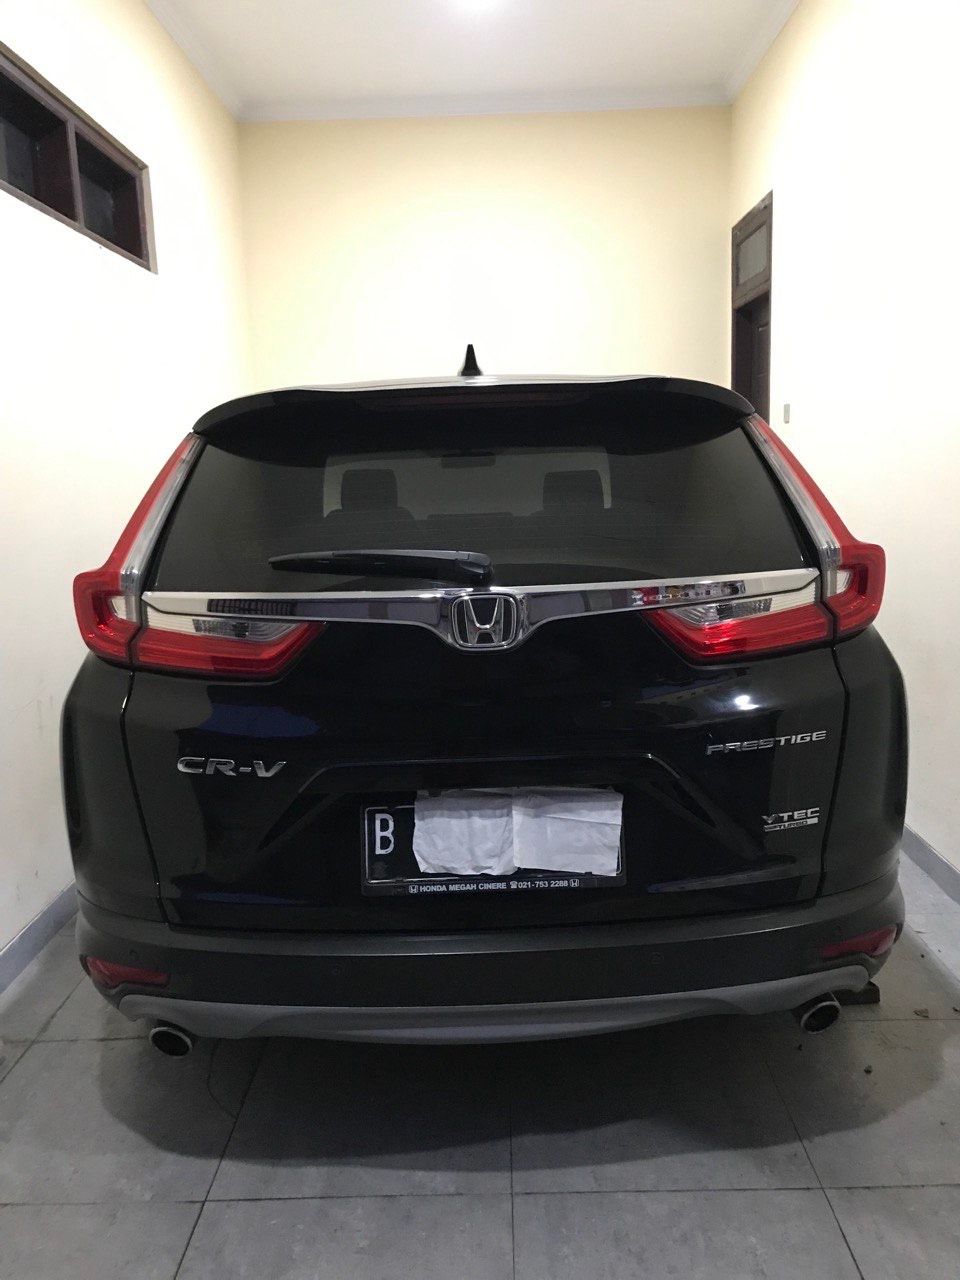 2019 Honda CRV Bekas